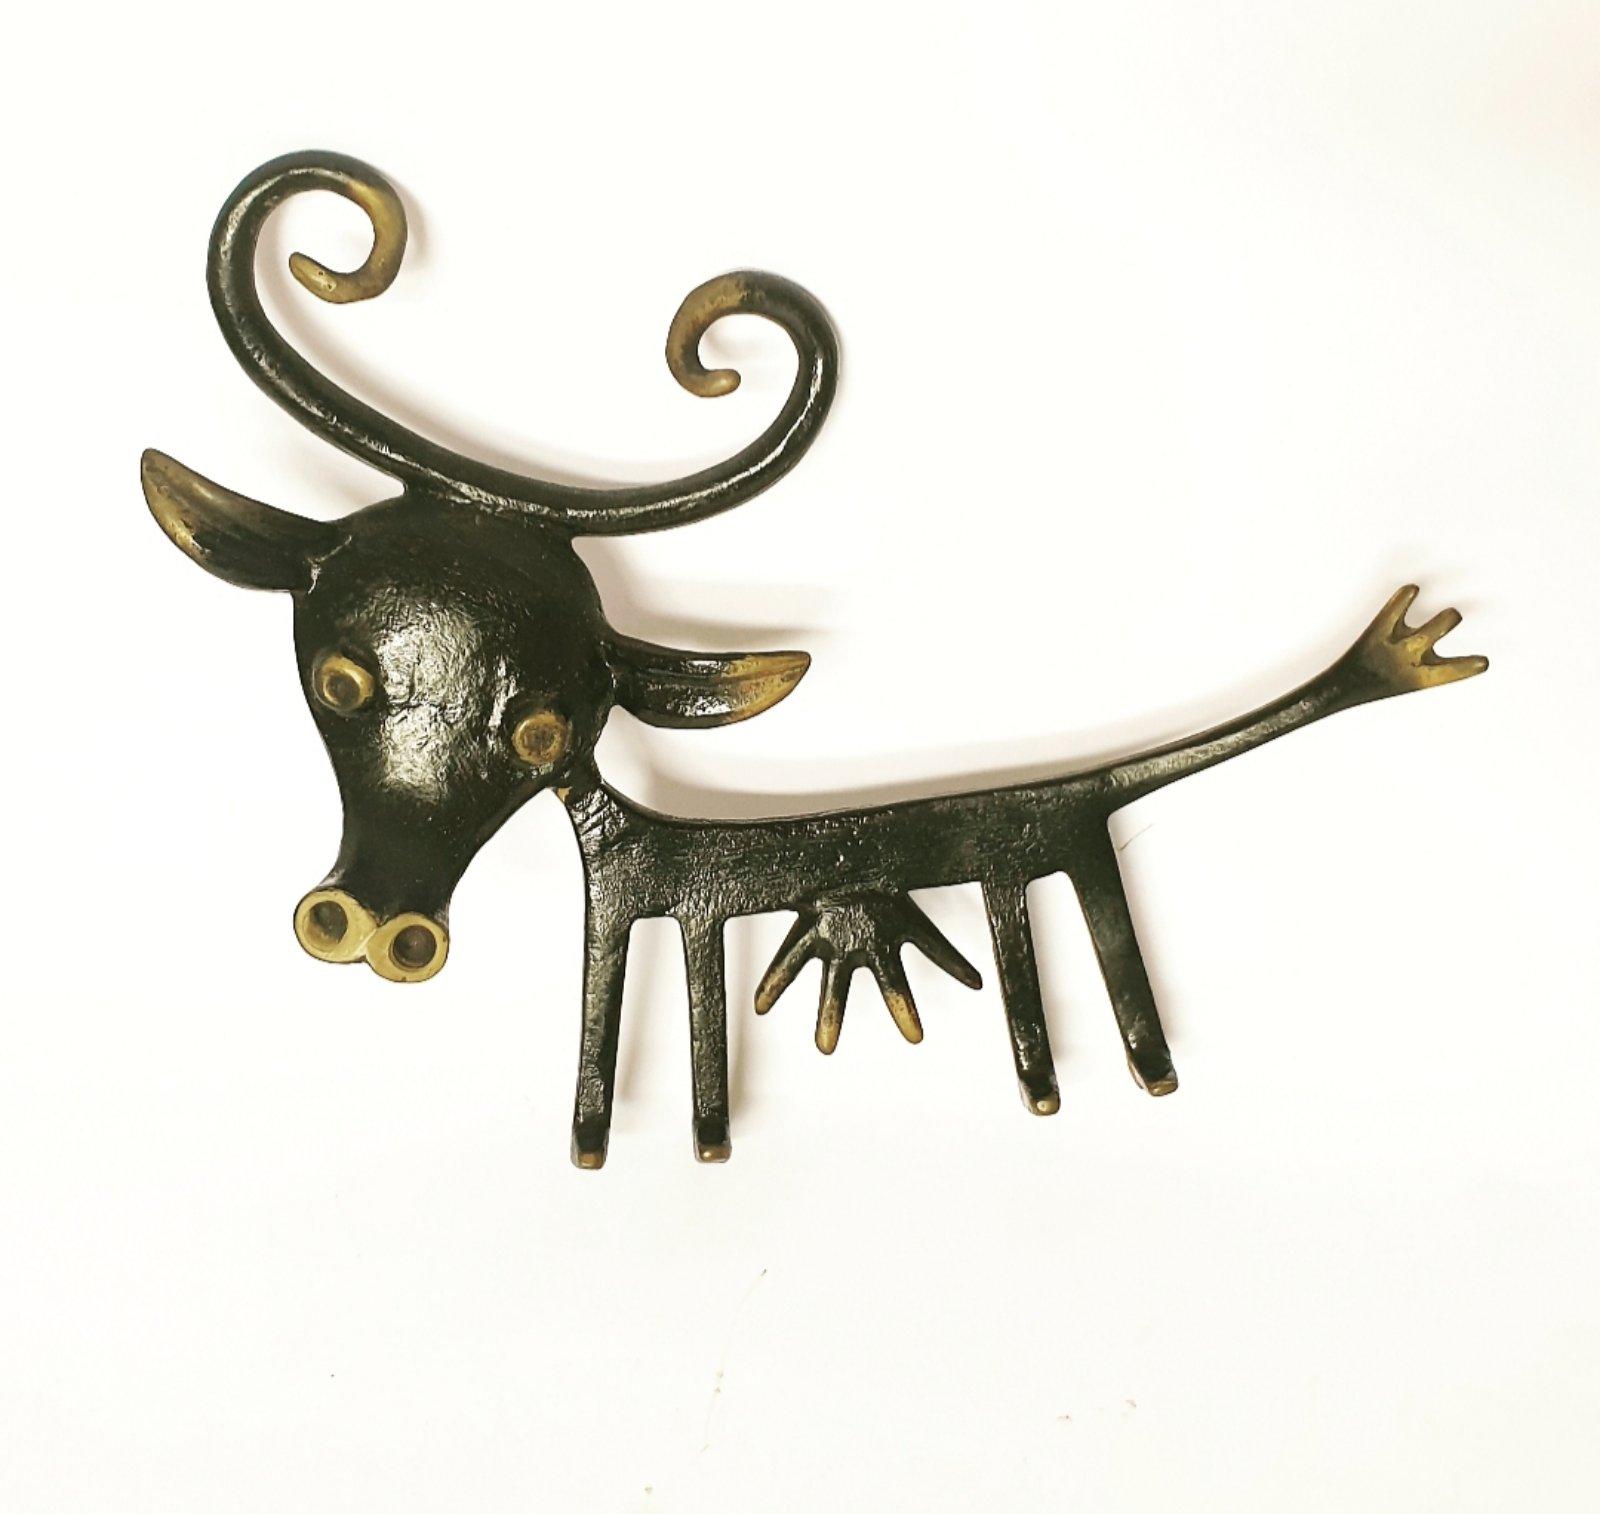 Sehr spezieller und seltener Schlüsselanhänger, der eine lustig aussehende Kuh zeigt. Sehr groß. Dies ist ein Originalstück, keine Reproduktion.

Entworfen von Walter Bosse, hergestellt von Hertha Baller, Wien in den 1950er Jahren.

Dieser